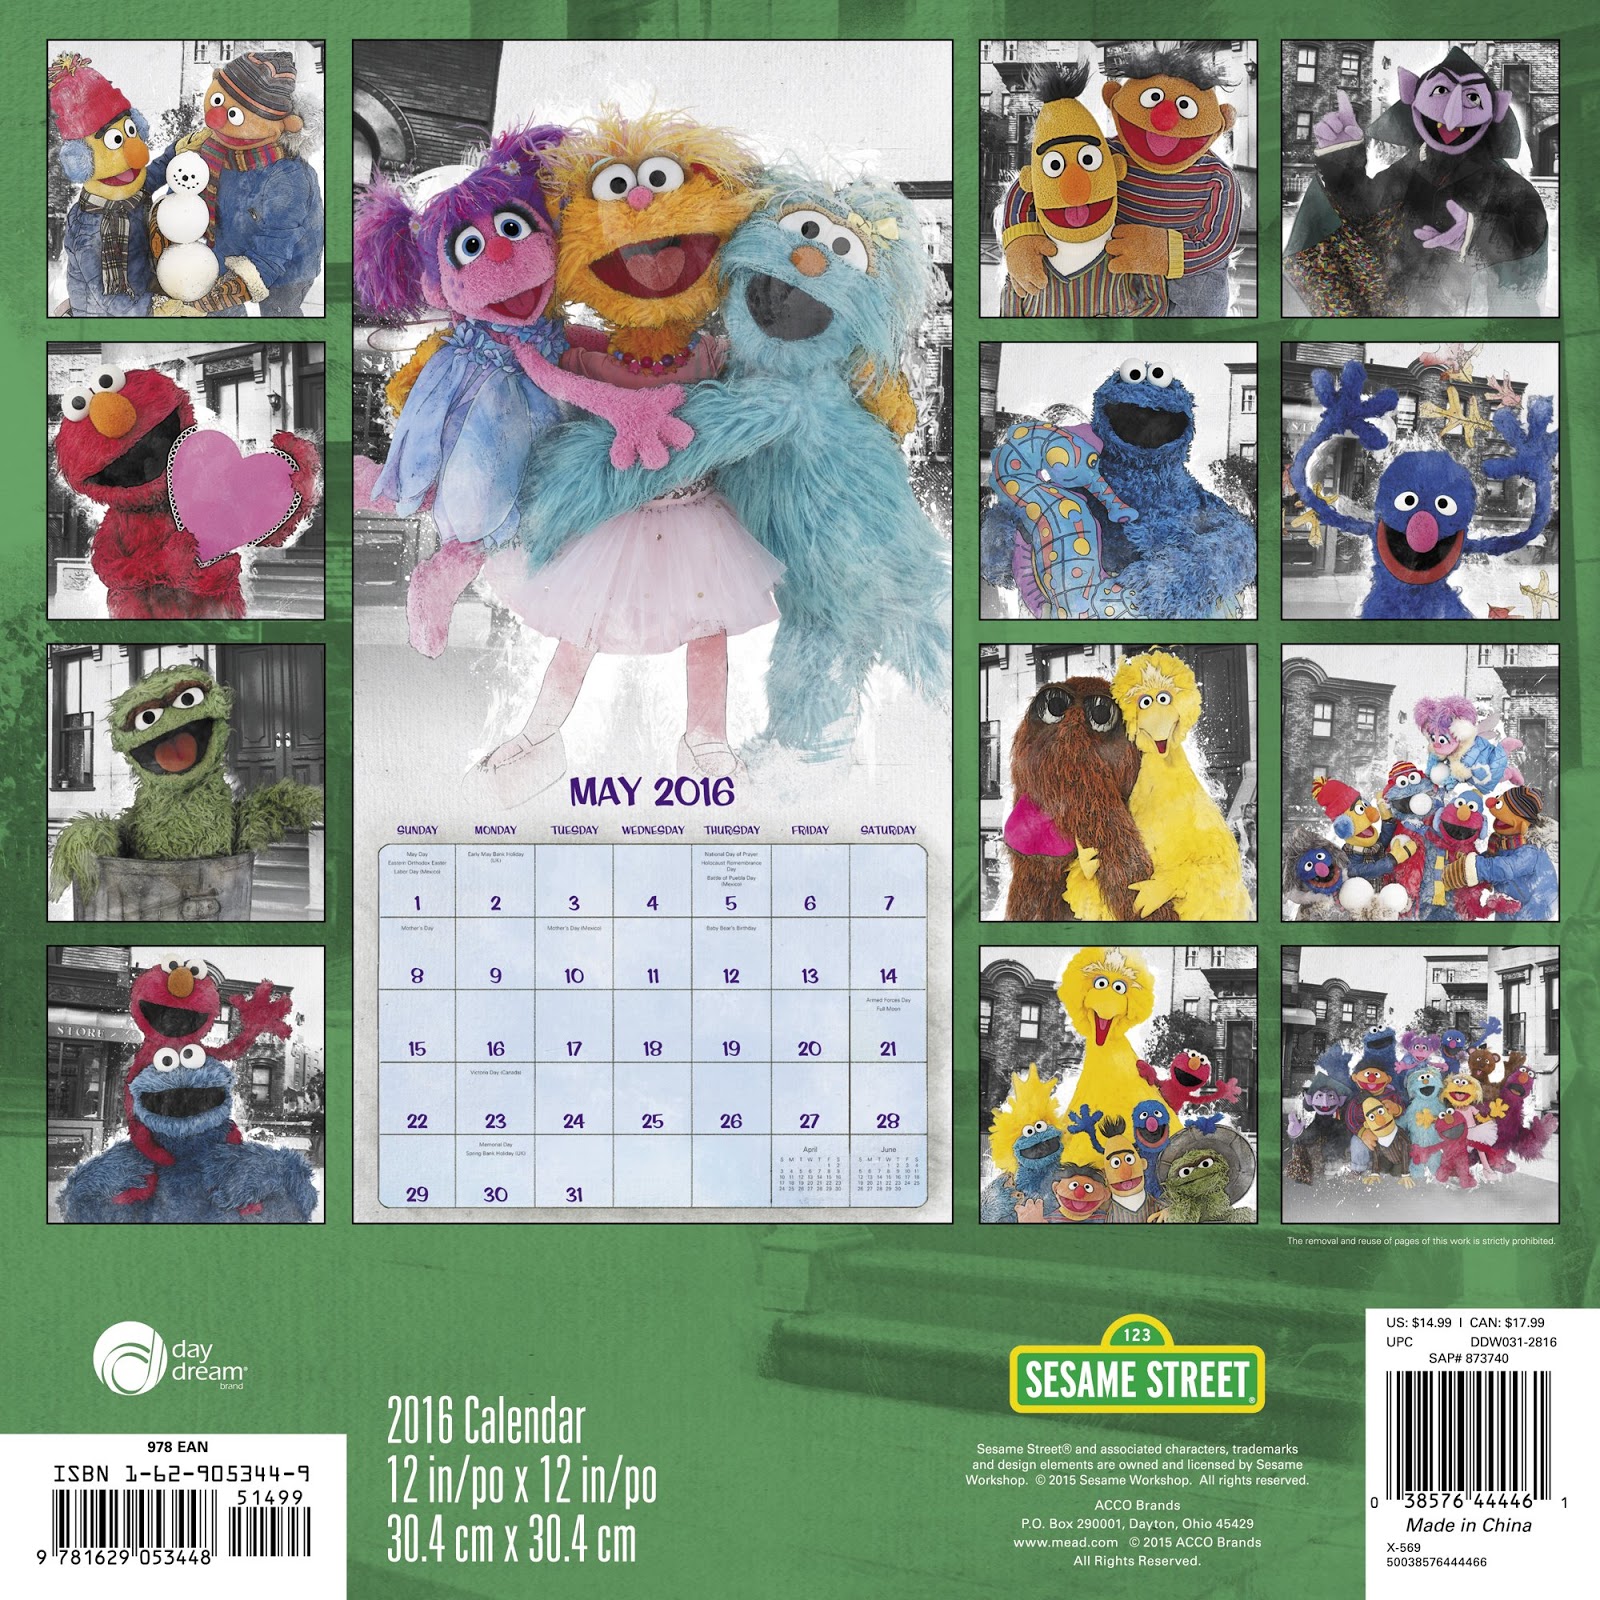 Muppet Stuff Sesame Street 2016 Calendar!